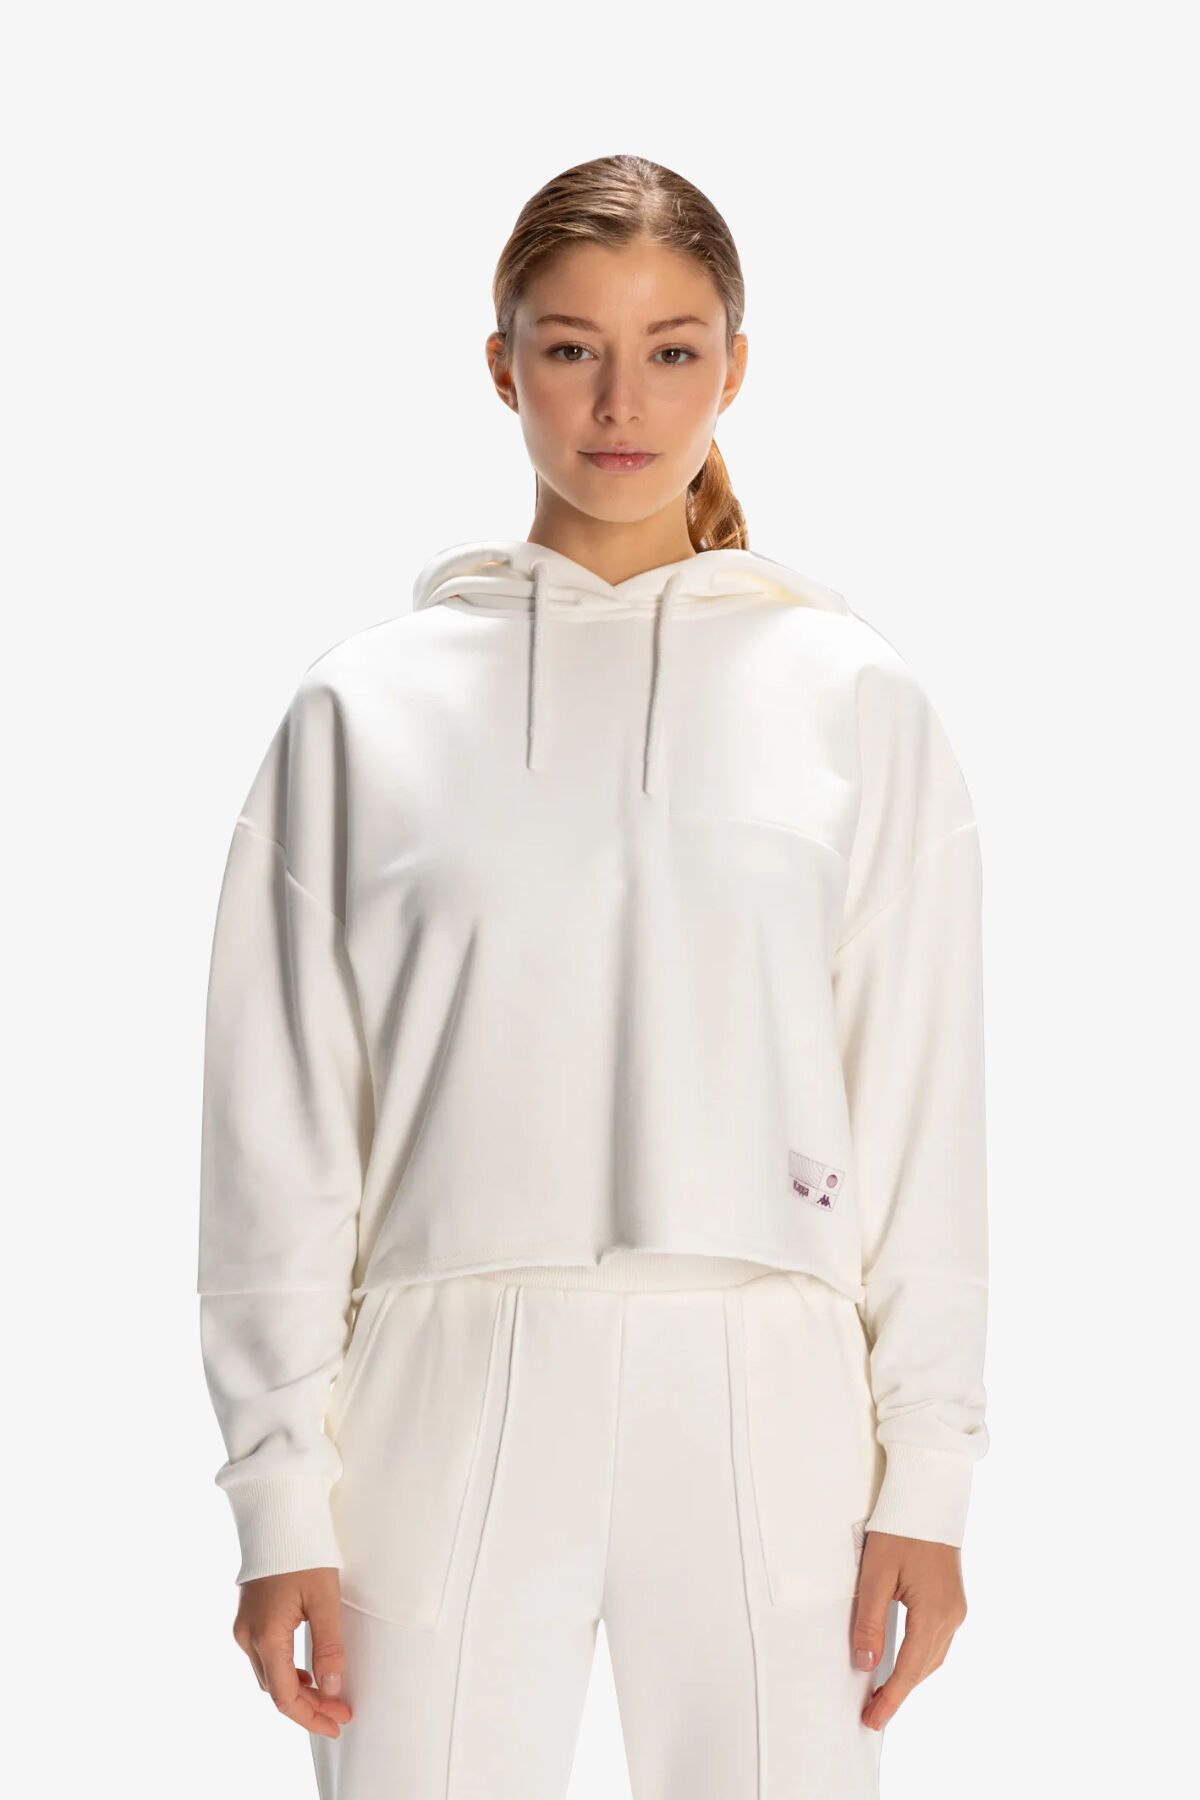 Kappa Authentic Jemima  Kadın Beyaz Sweatshirt 381X12W-001